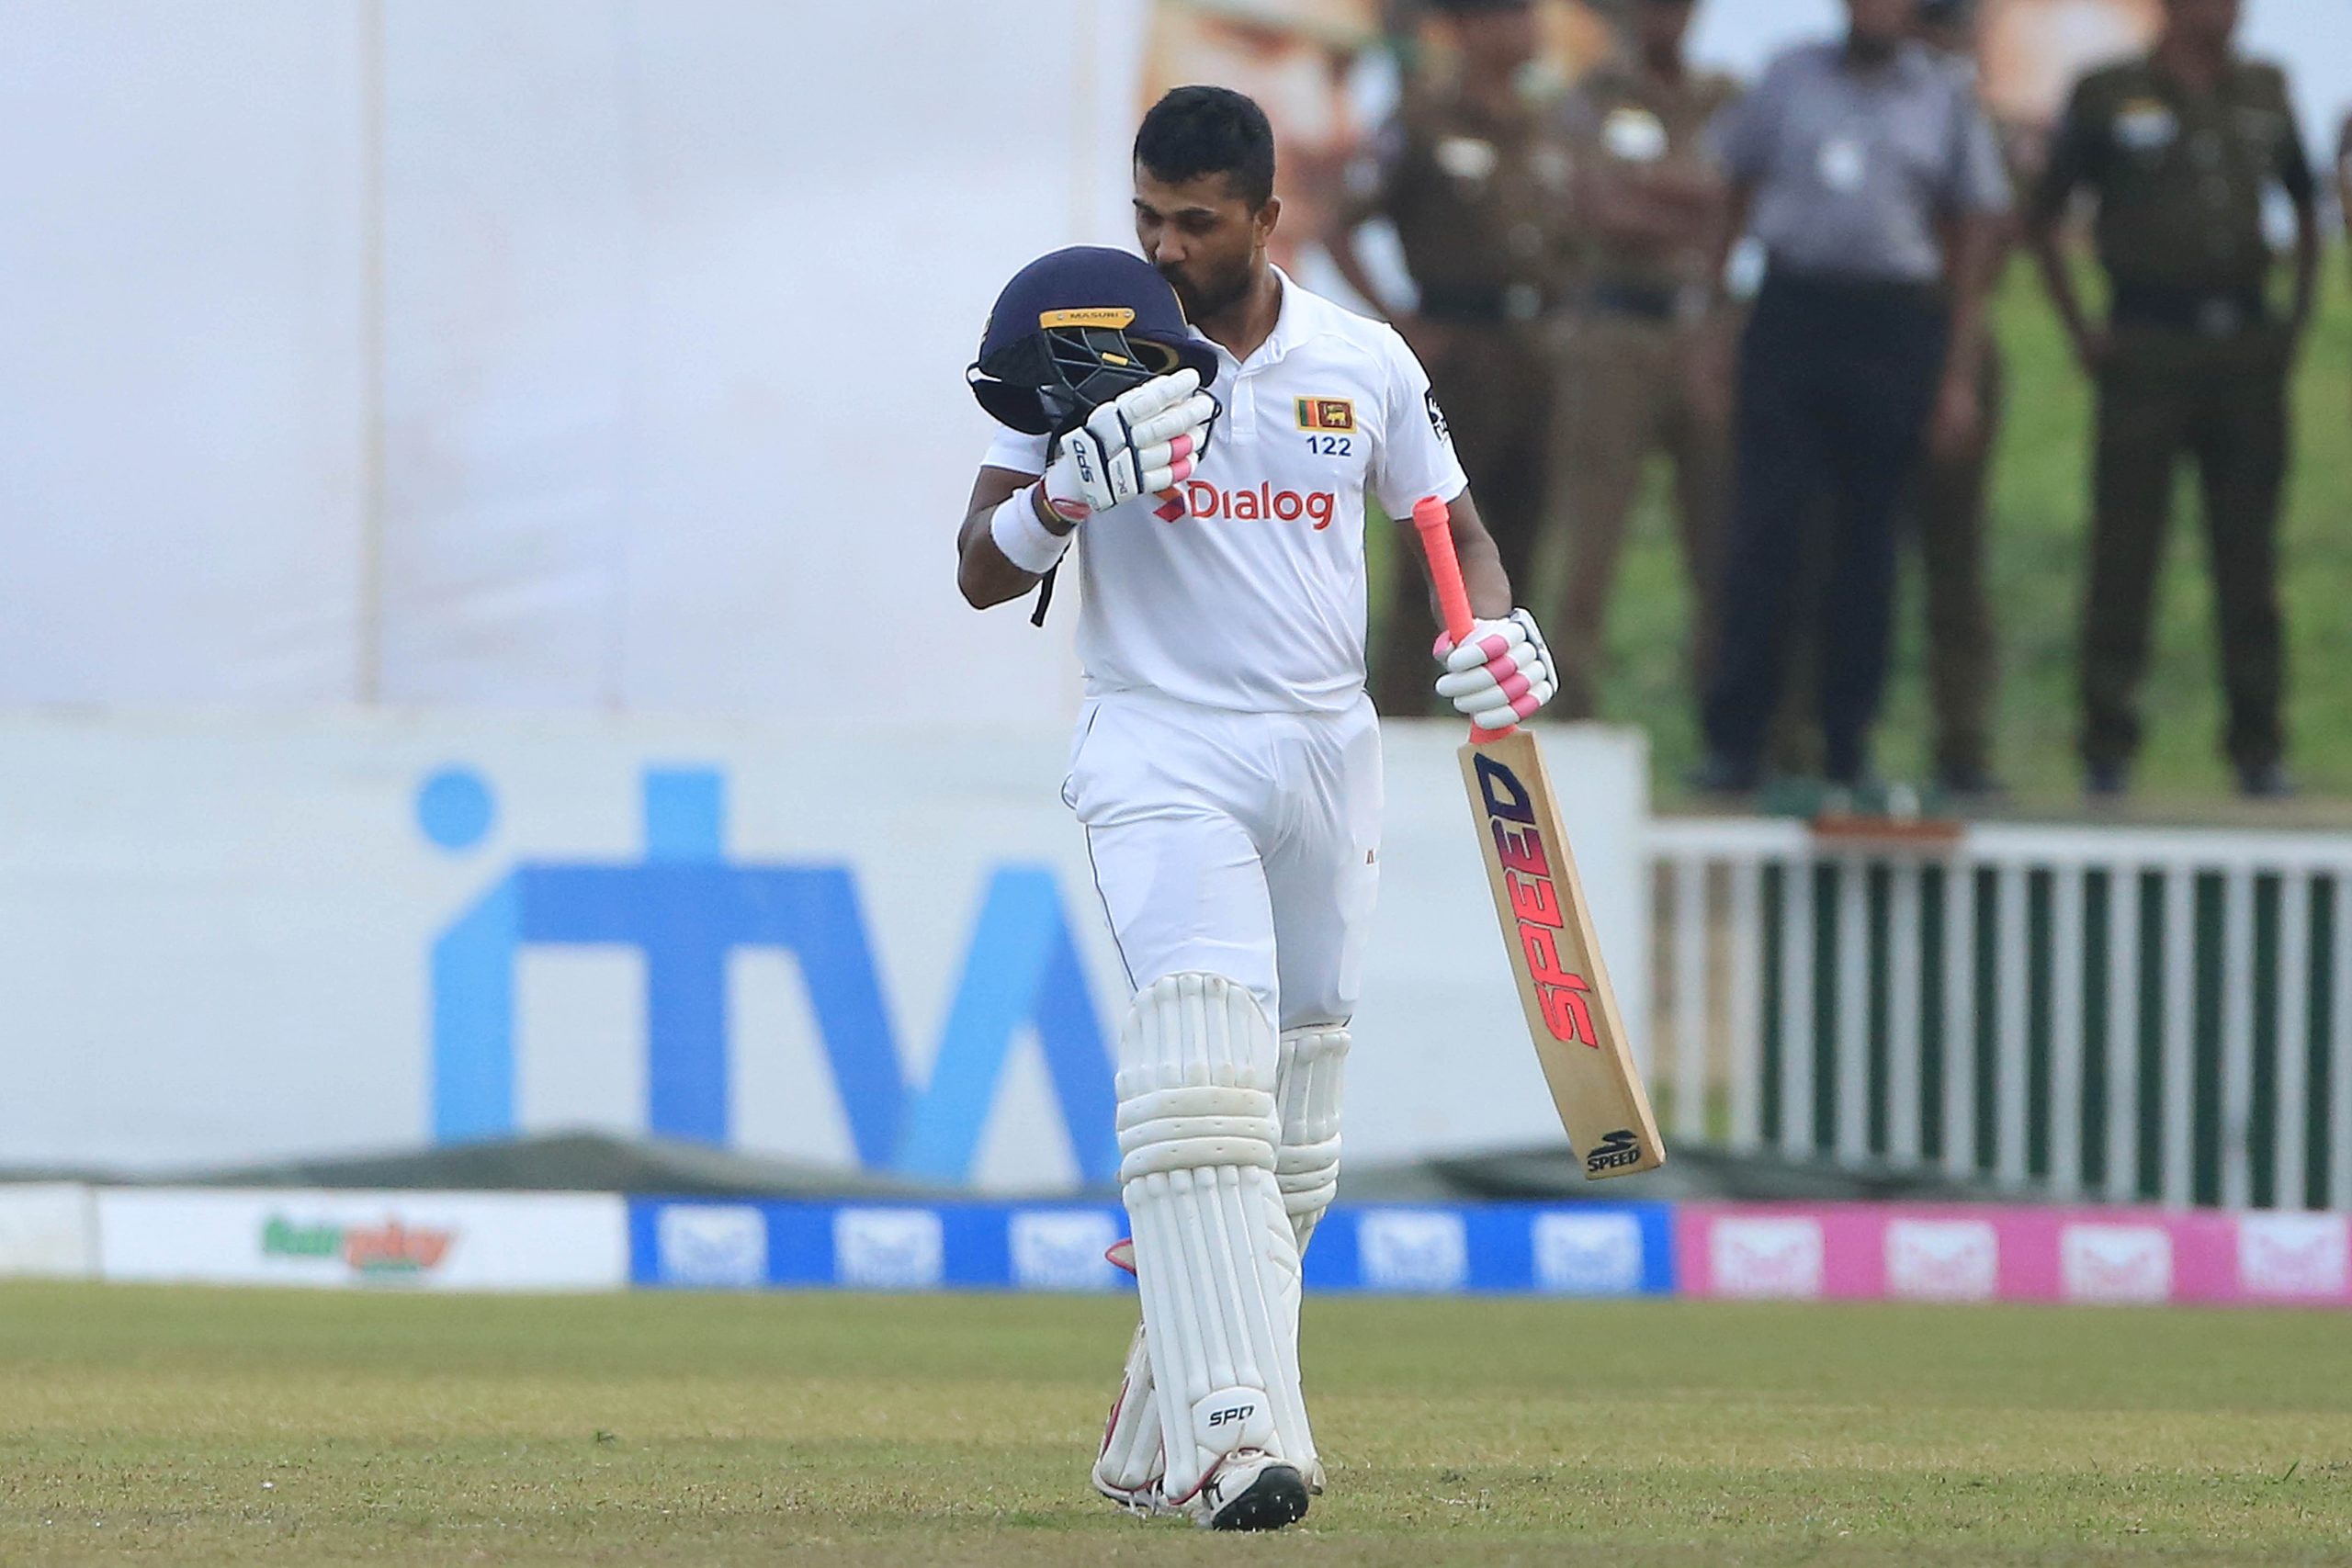 Chandimal rides back strong with unbeaten 118, Kamindu 61, Mathews 52 – Sri Lanka 431/6 lead by 67